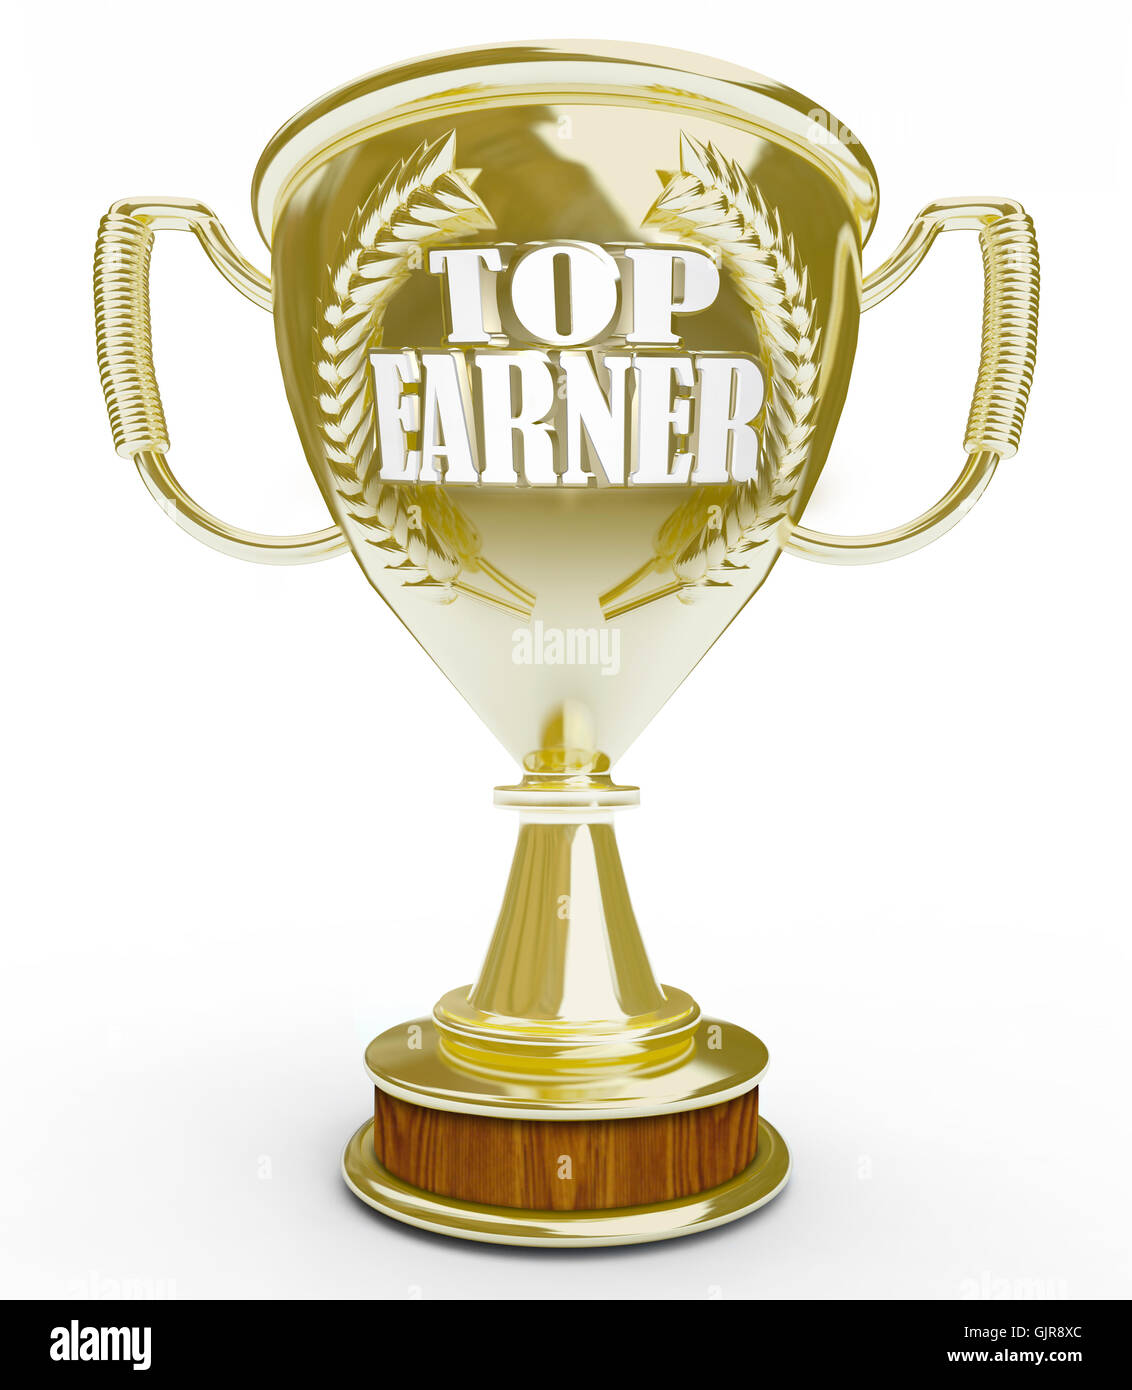 Top Earner - Words on Golden Trophy Stock Photo